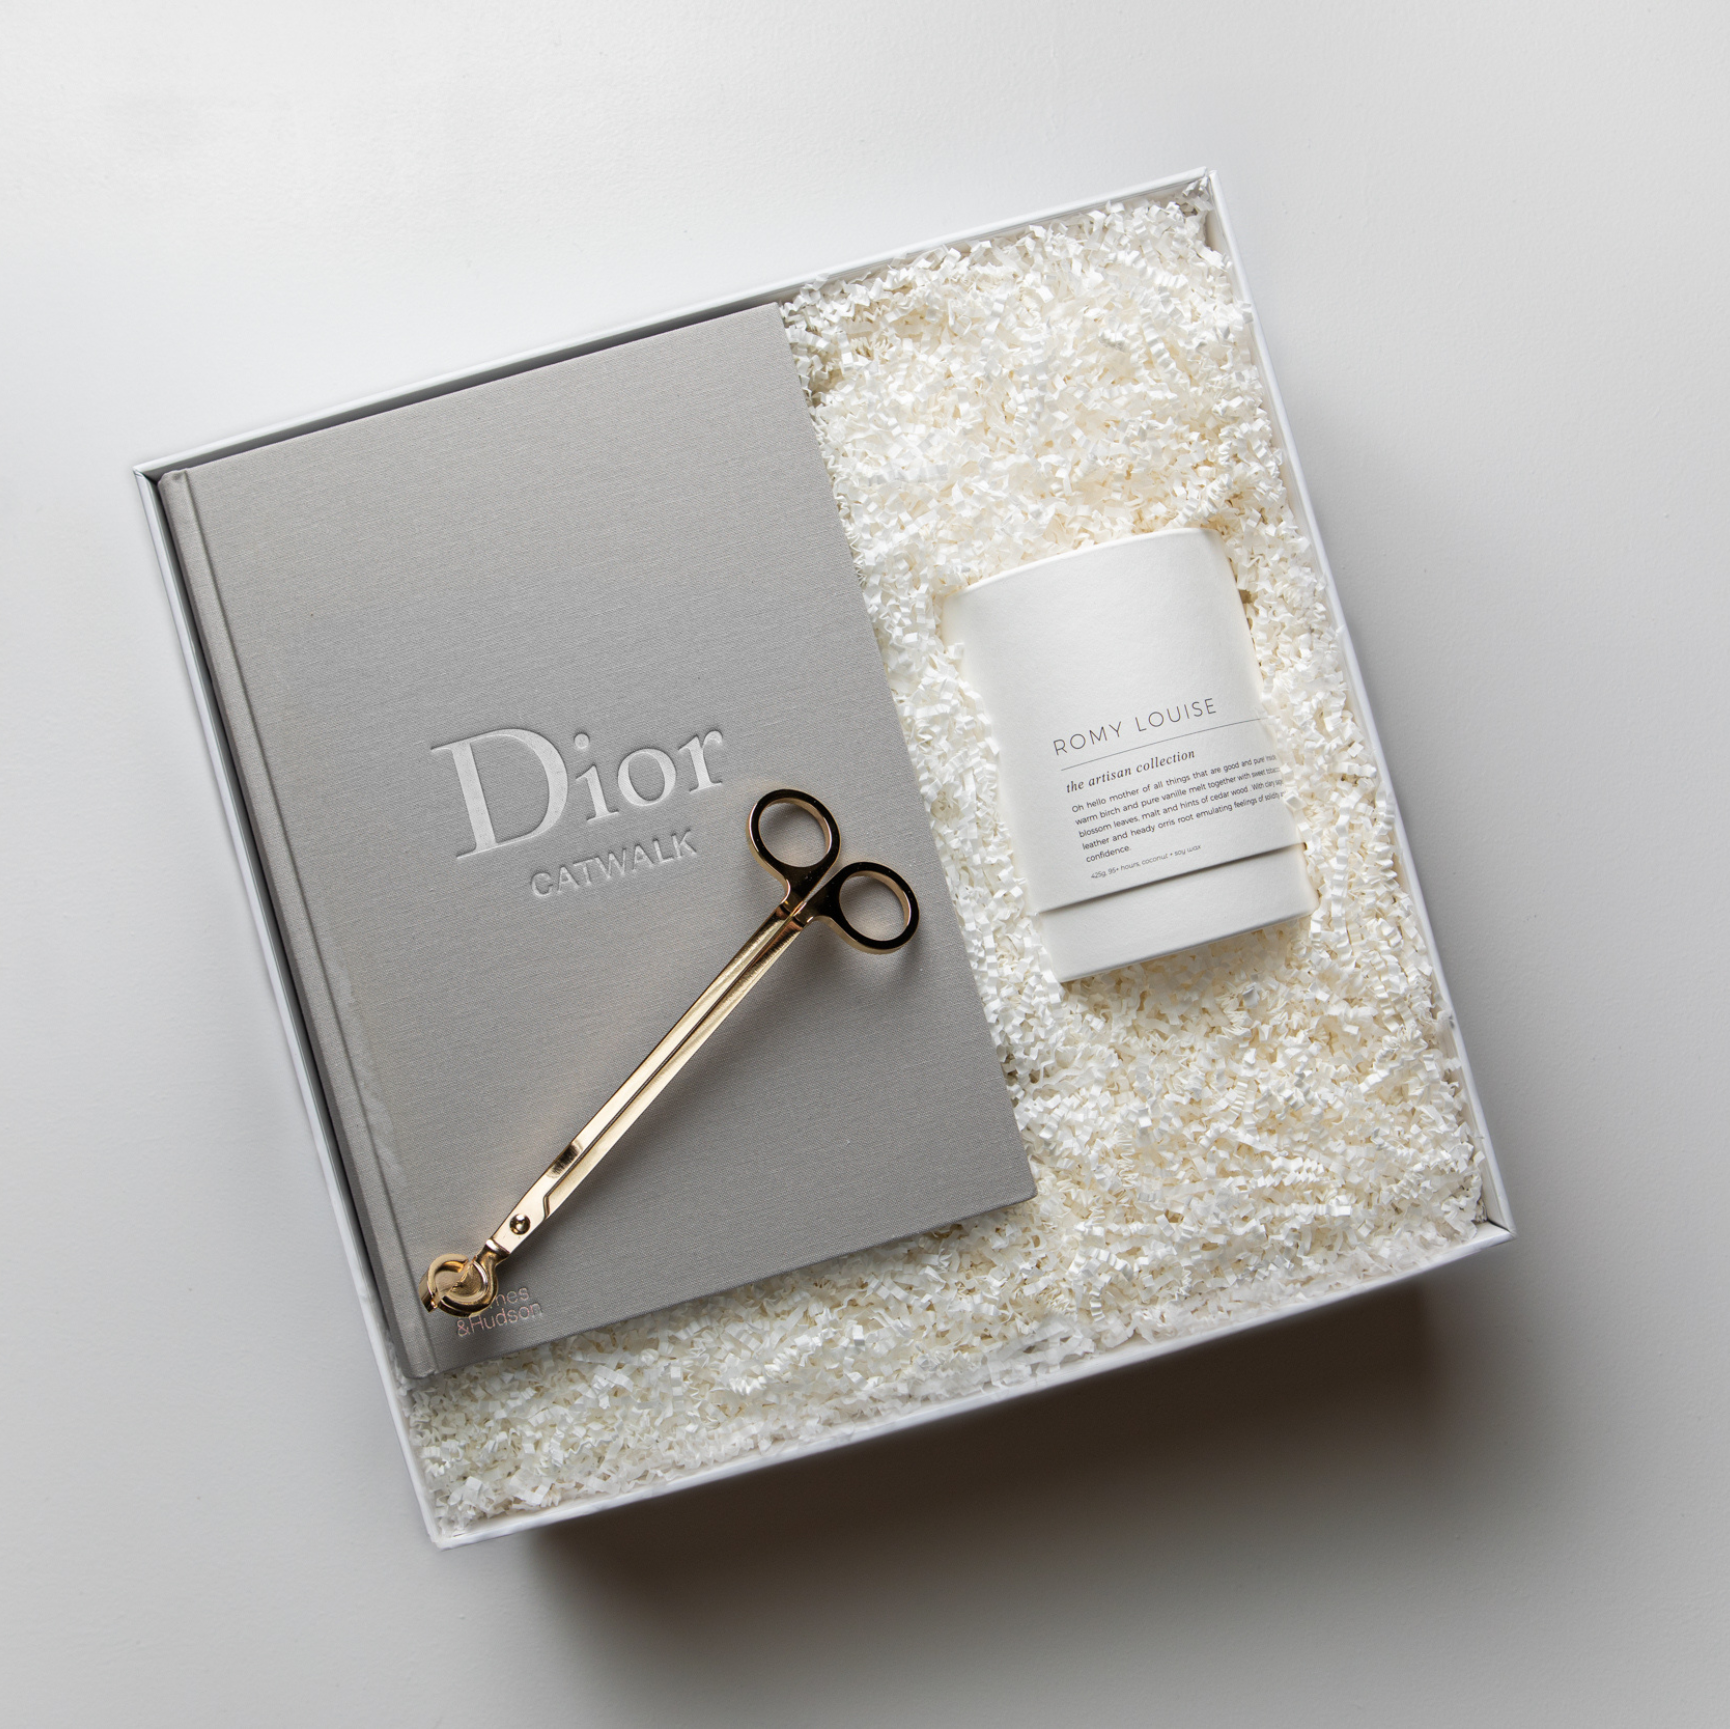 The Dior Gift Box - LÂPACH